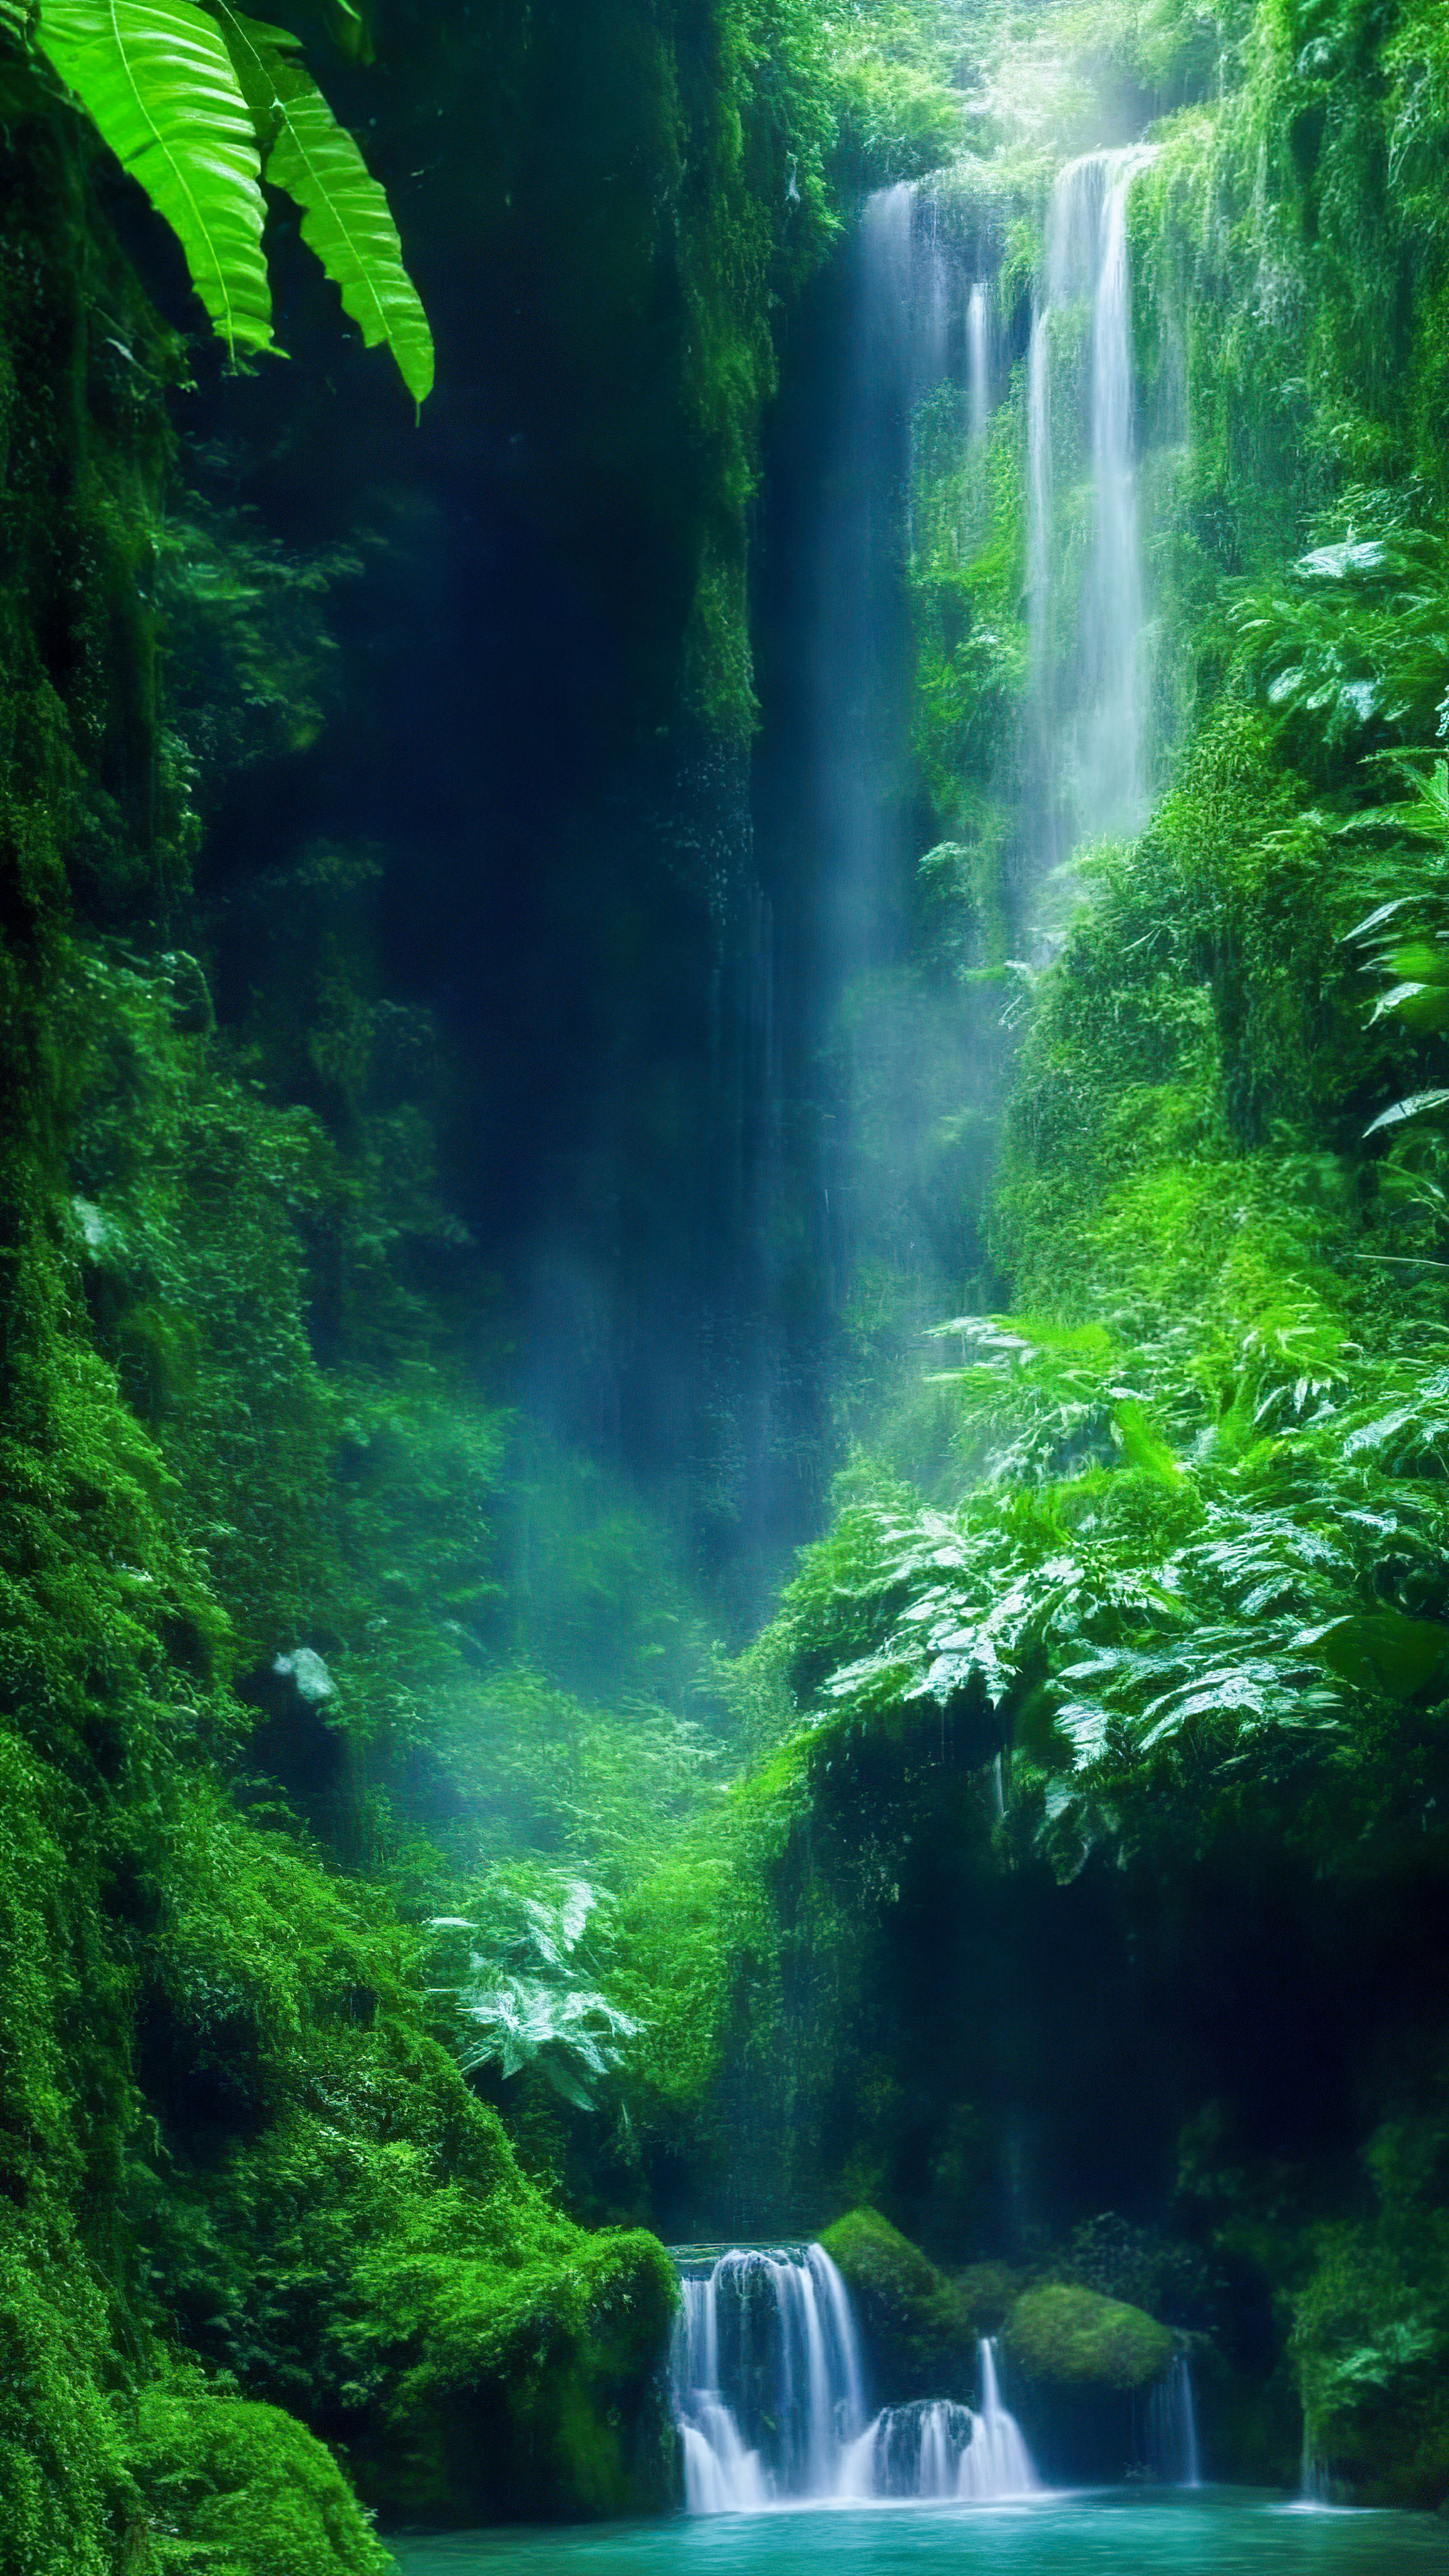 Perdez-vous dans la magie de notre fond d'écran de paysage esthétique mignon, présentant une cascade enchantée et mystique cachée au plus profond de la luxuriante forêt tropicale émeraude.